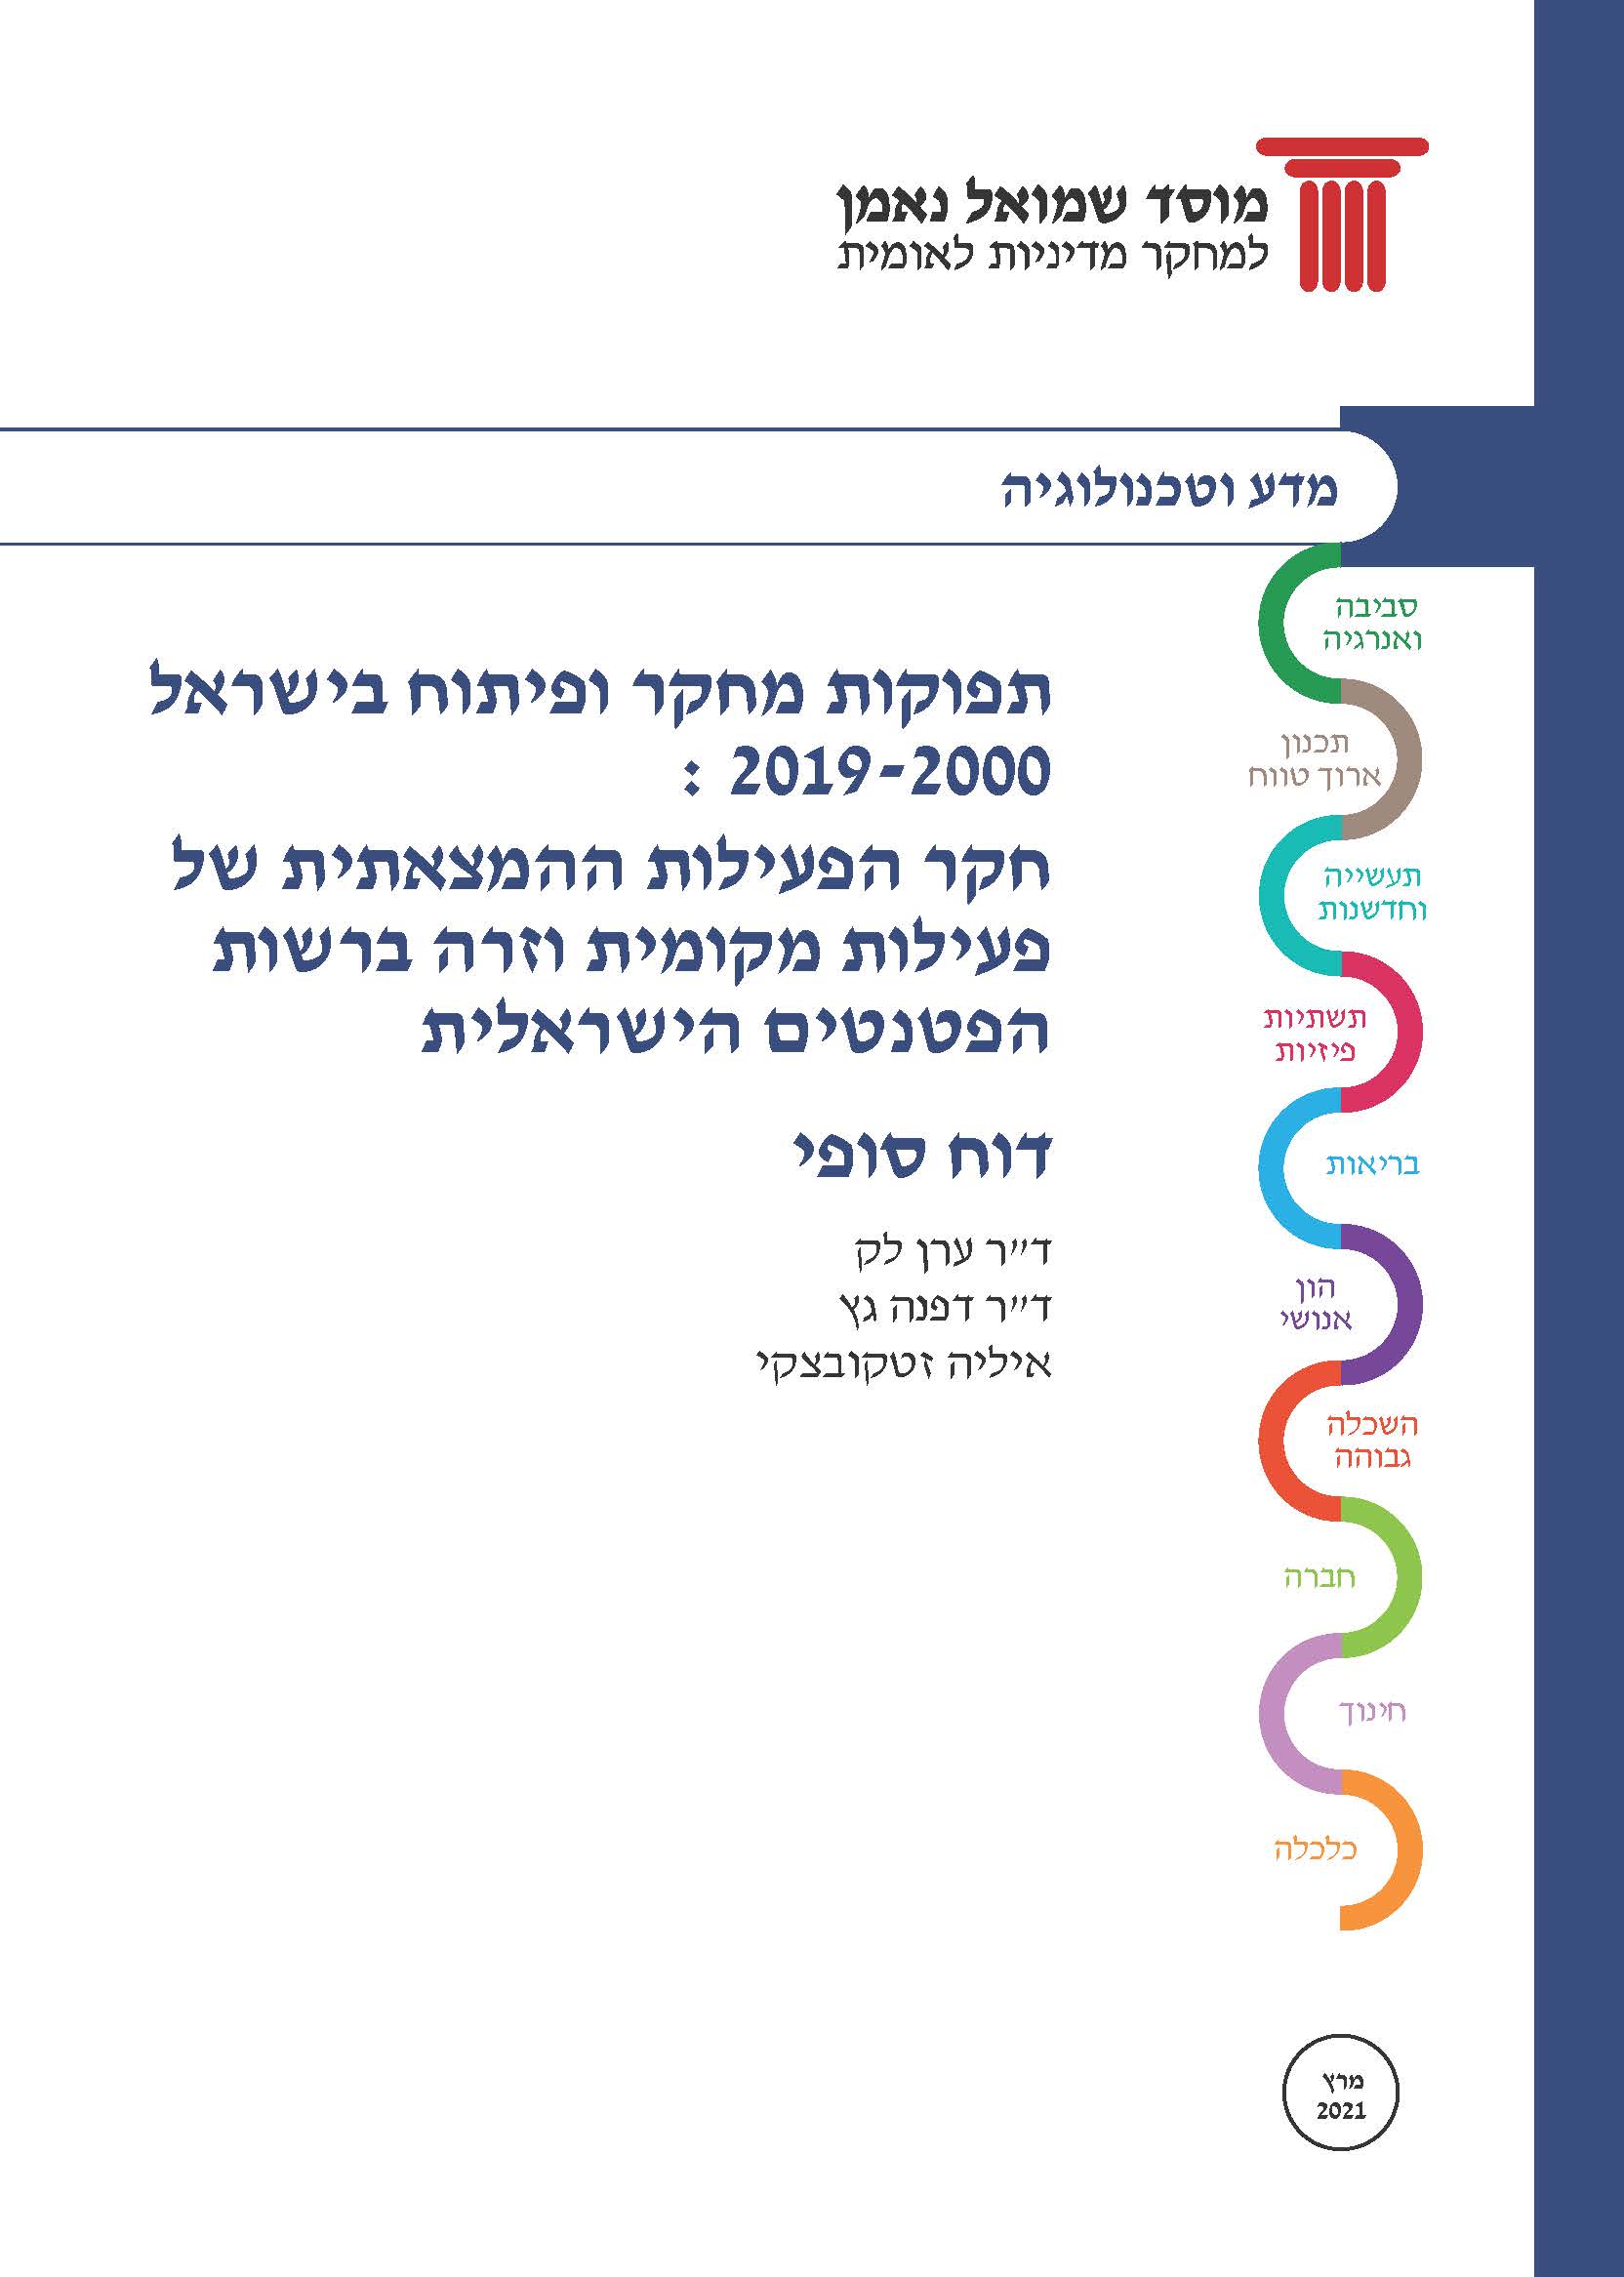 תפוקות מו"פ בישראל 2019-2000: חקר הפעילות ההמצאתית של פעילות מקומית וזרה ברשות הפטנטים הישראלית